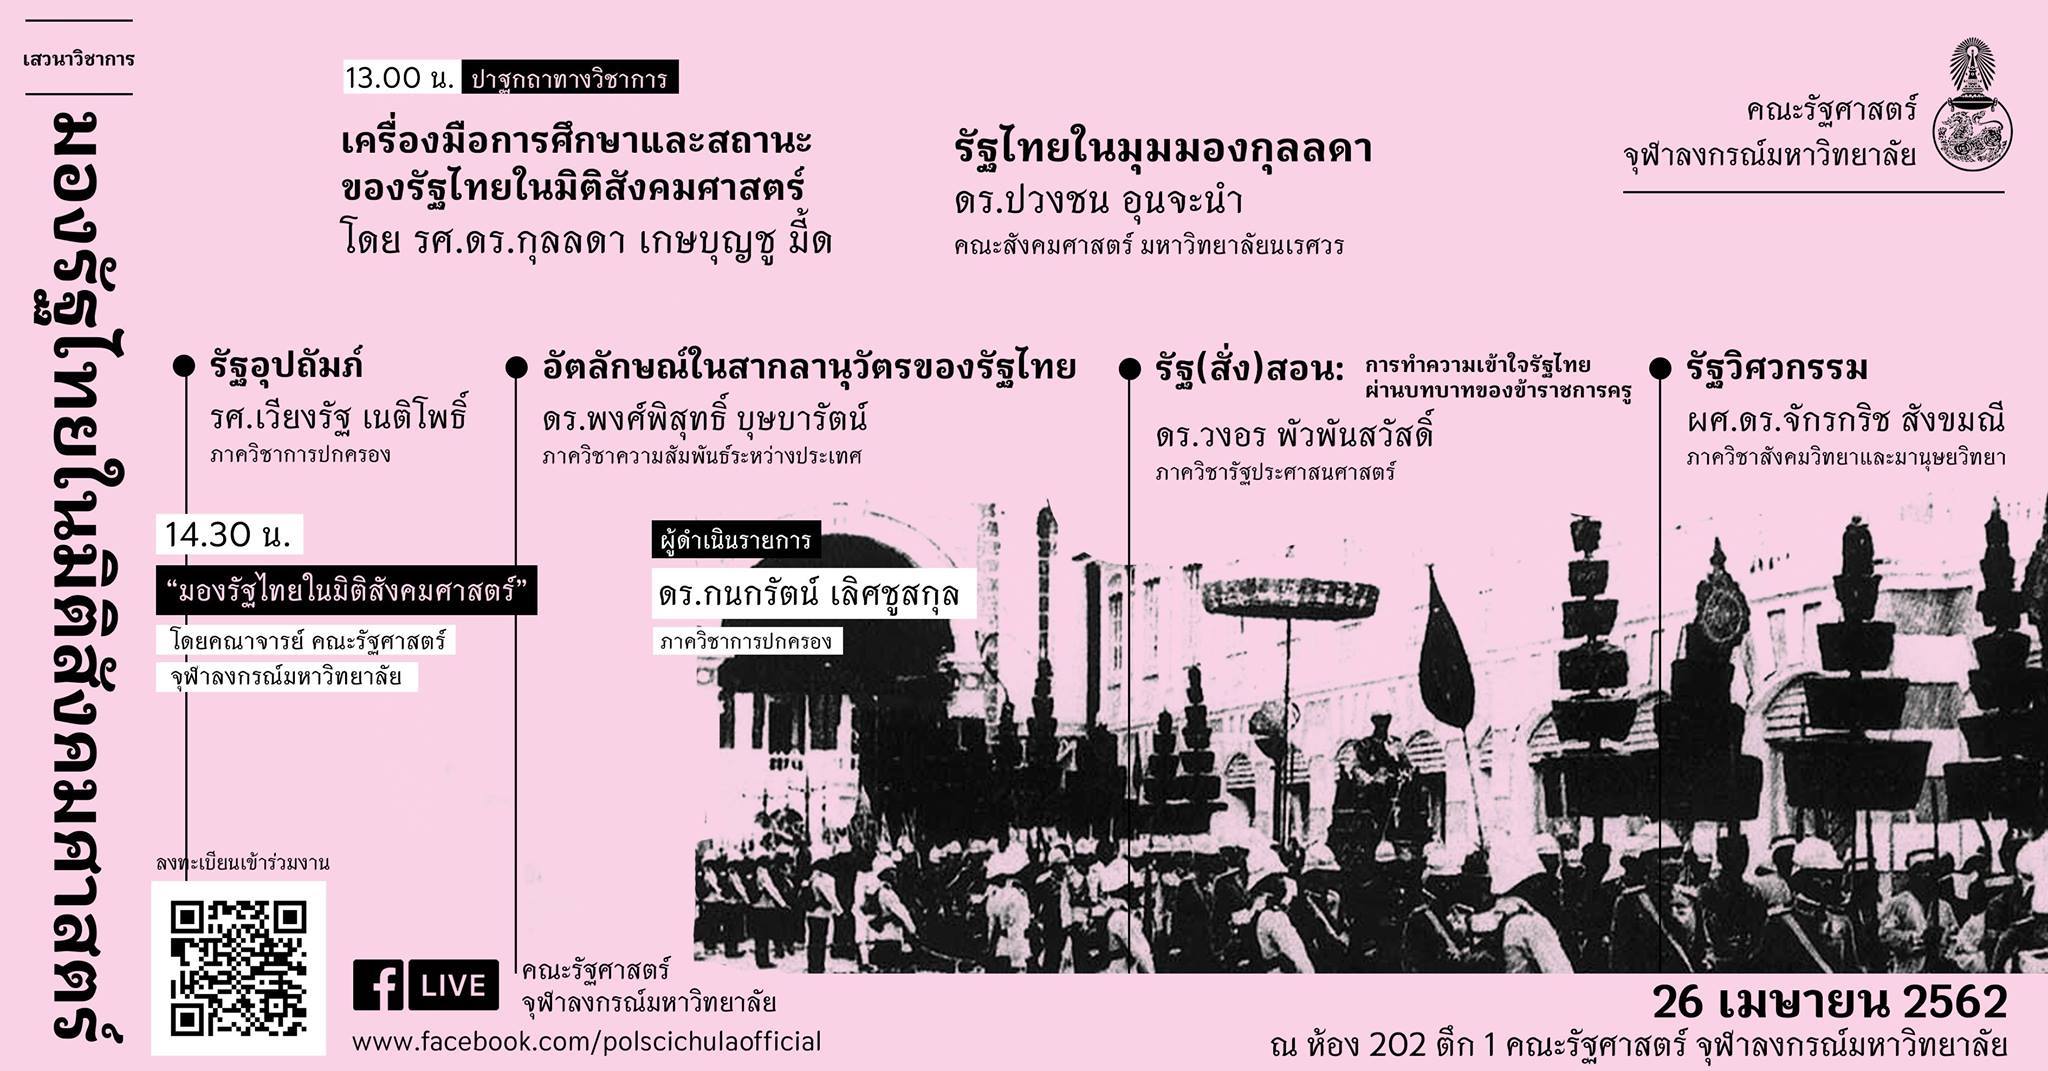 มองรัฐไทยในมิติสังคมศาสตร์ (The Thai State from the Social Science Perspectives)